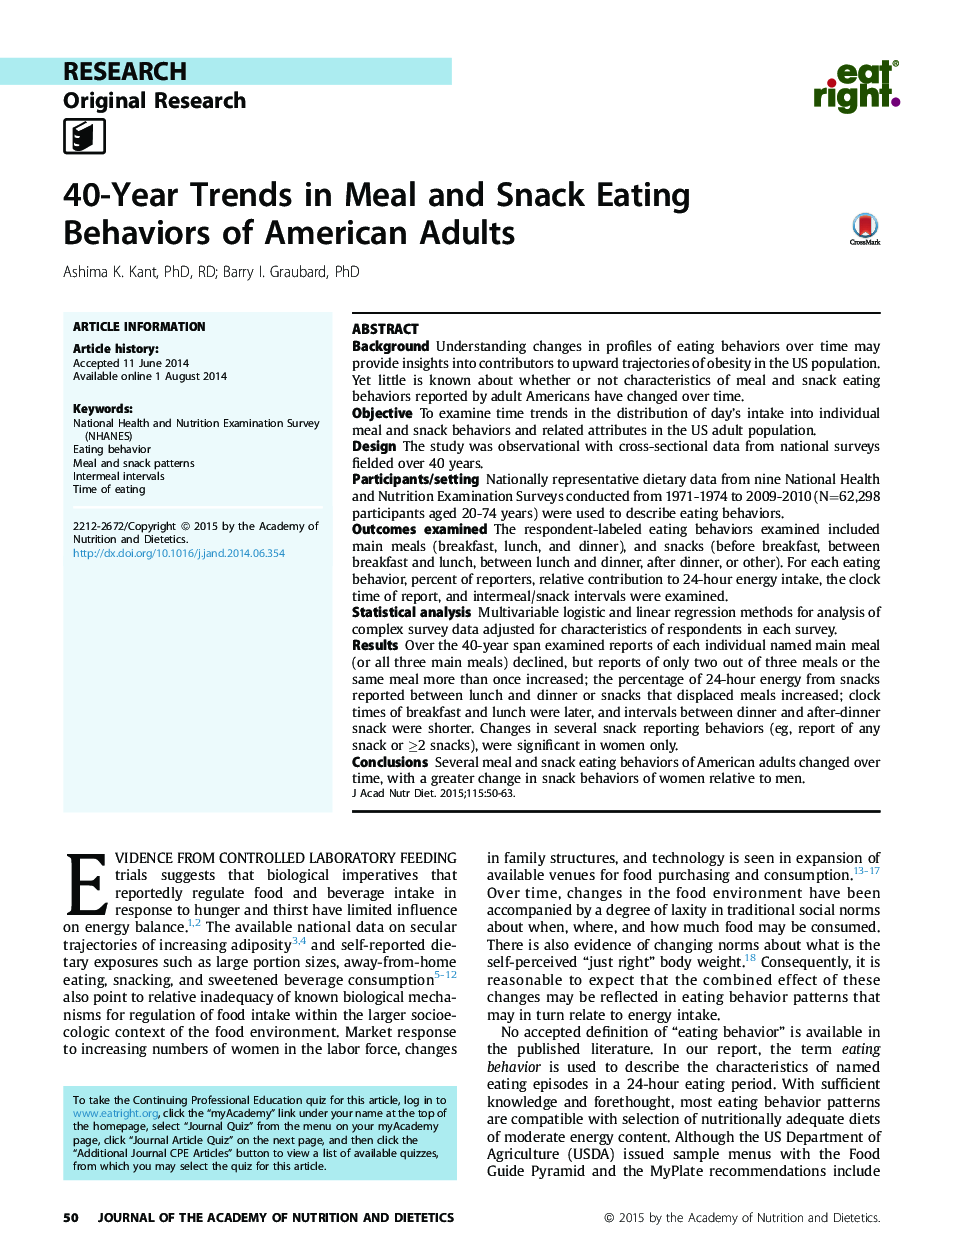 روند 40 ساله در رفتارهای خوردن غذا و اسنک بزرگسالان آمریکایی